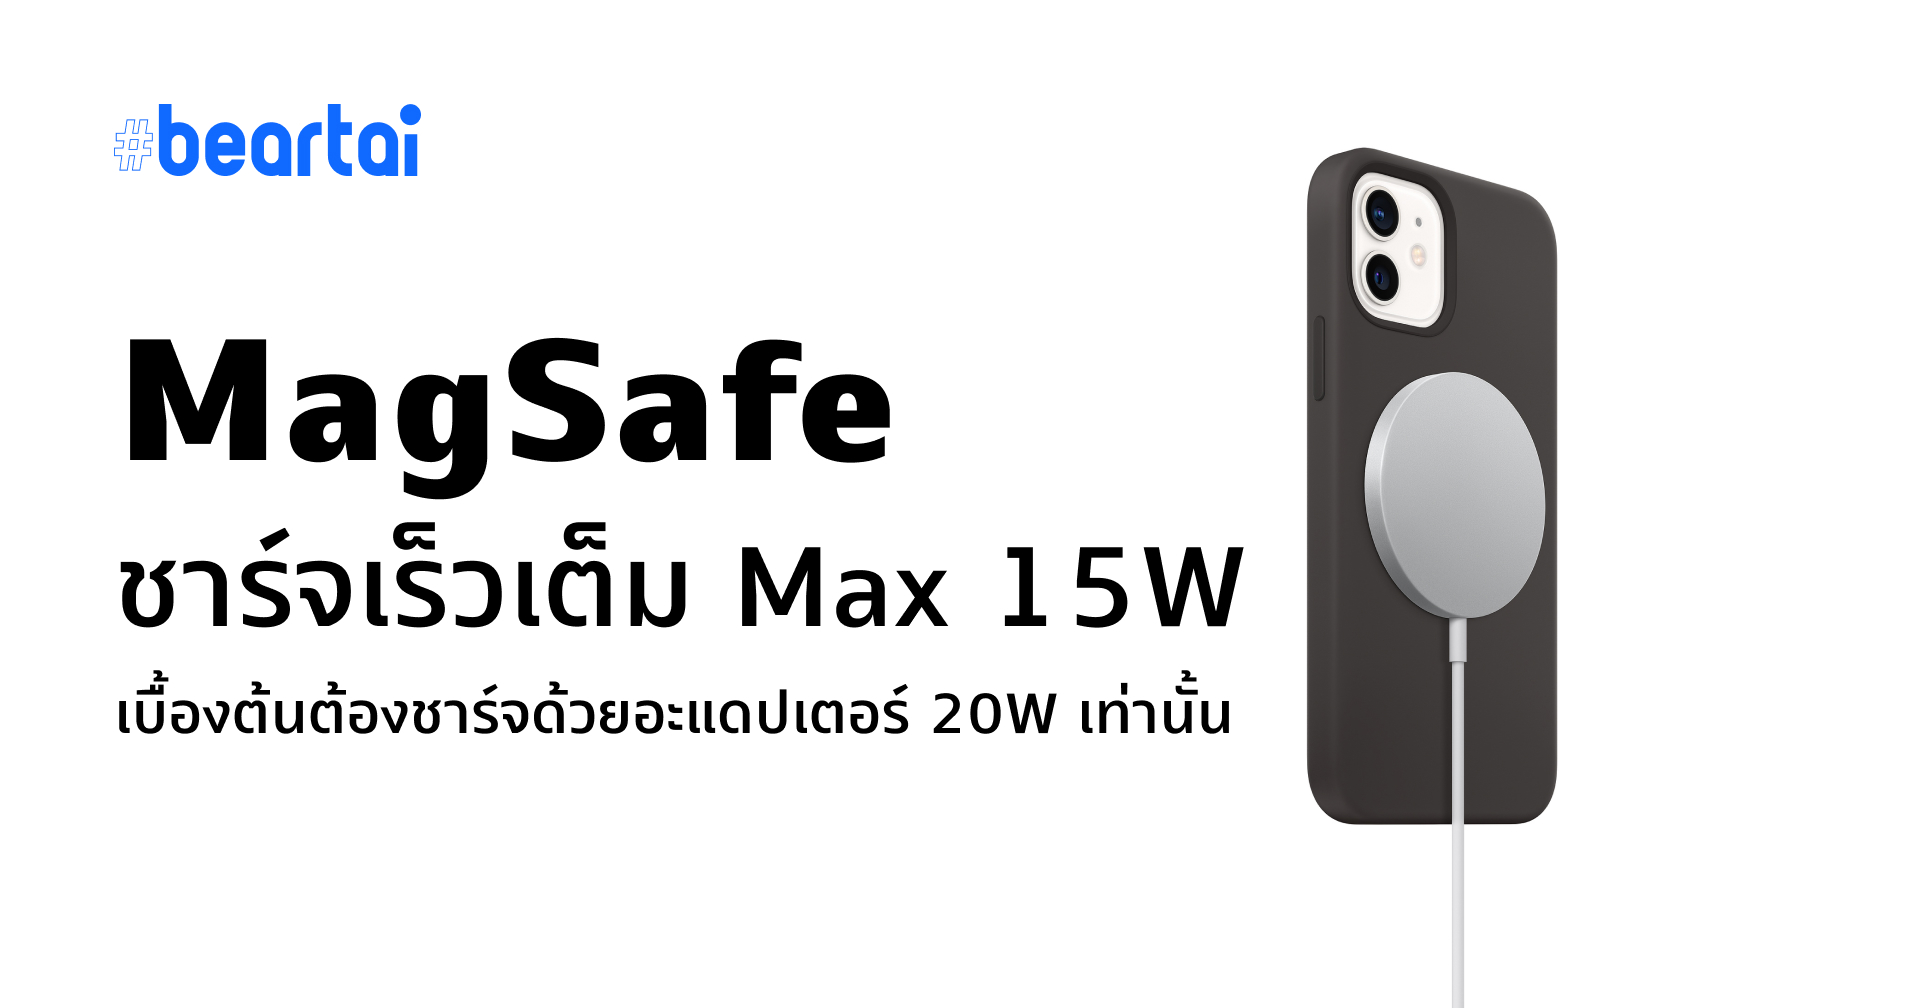 บังคับซื้อ?? MagSafe ต้องใช้หัวชาร์จ 20W ใหม่ของ Apple เท่านั้น ถึงจะได้สปีดเต็ม Max 15W